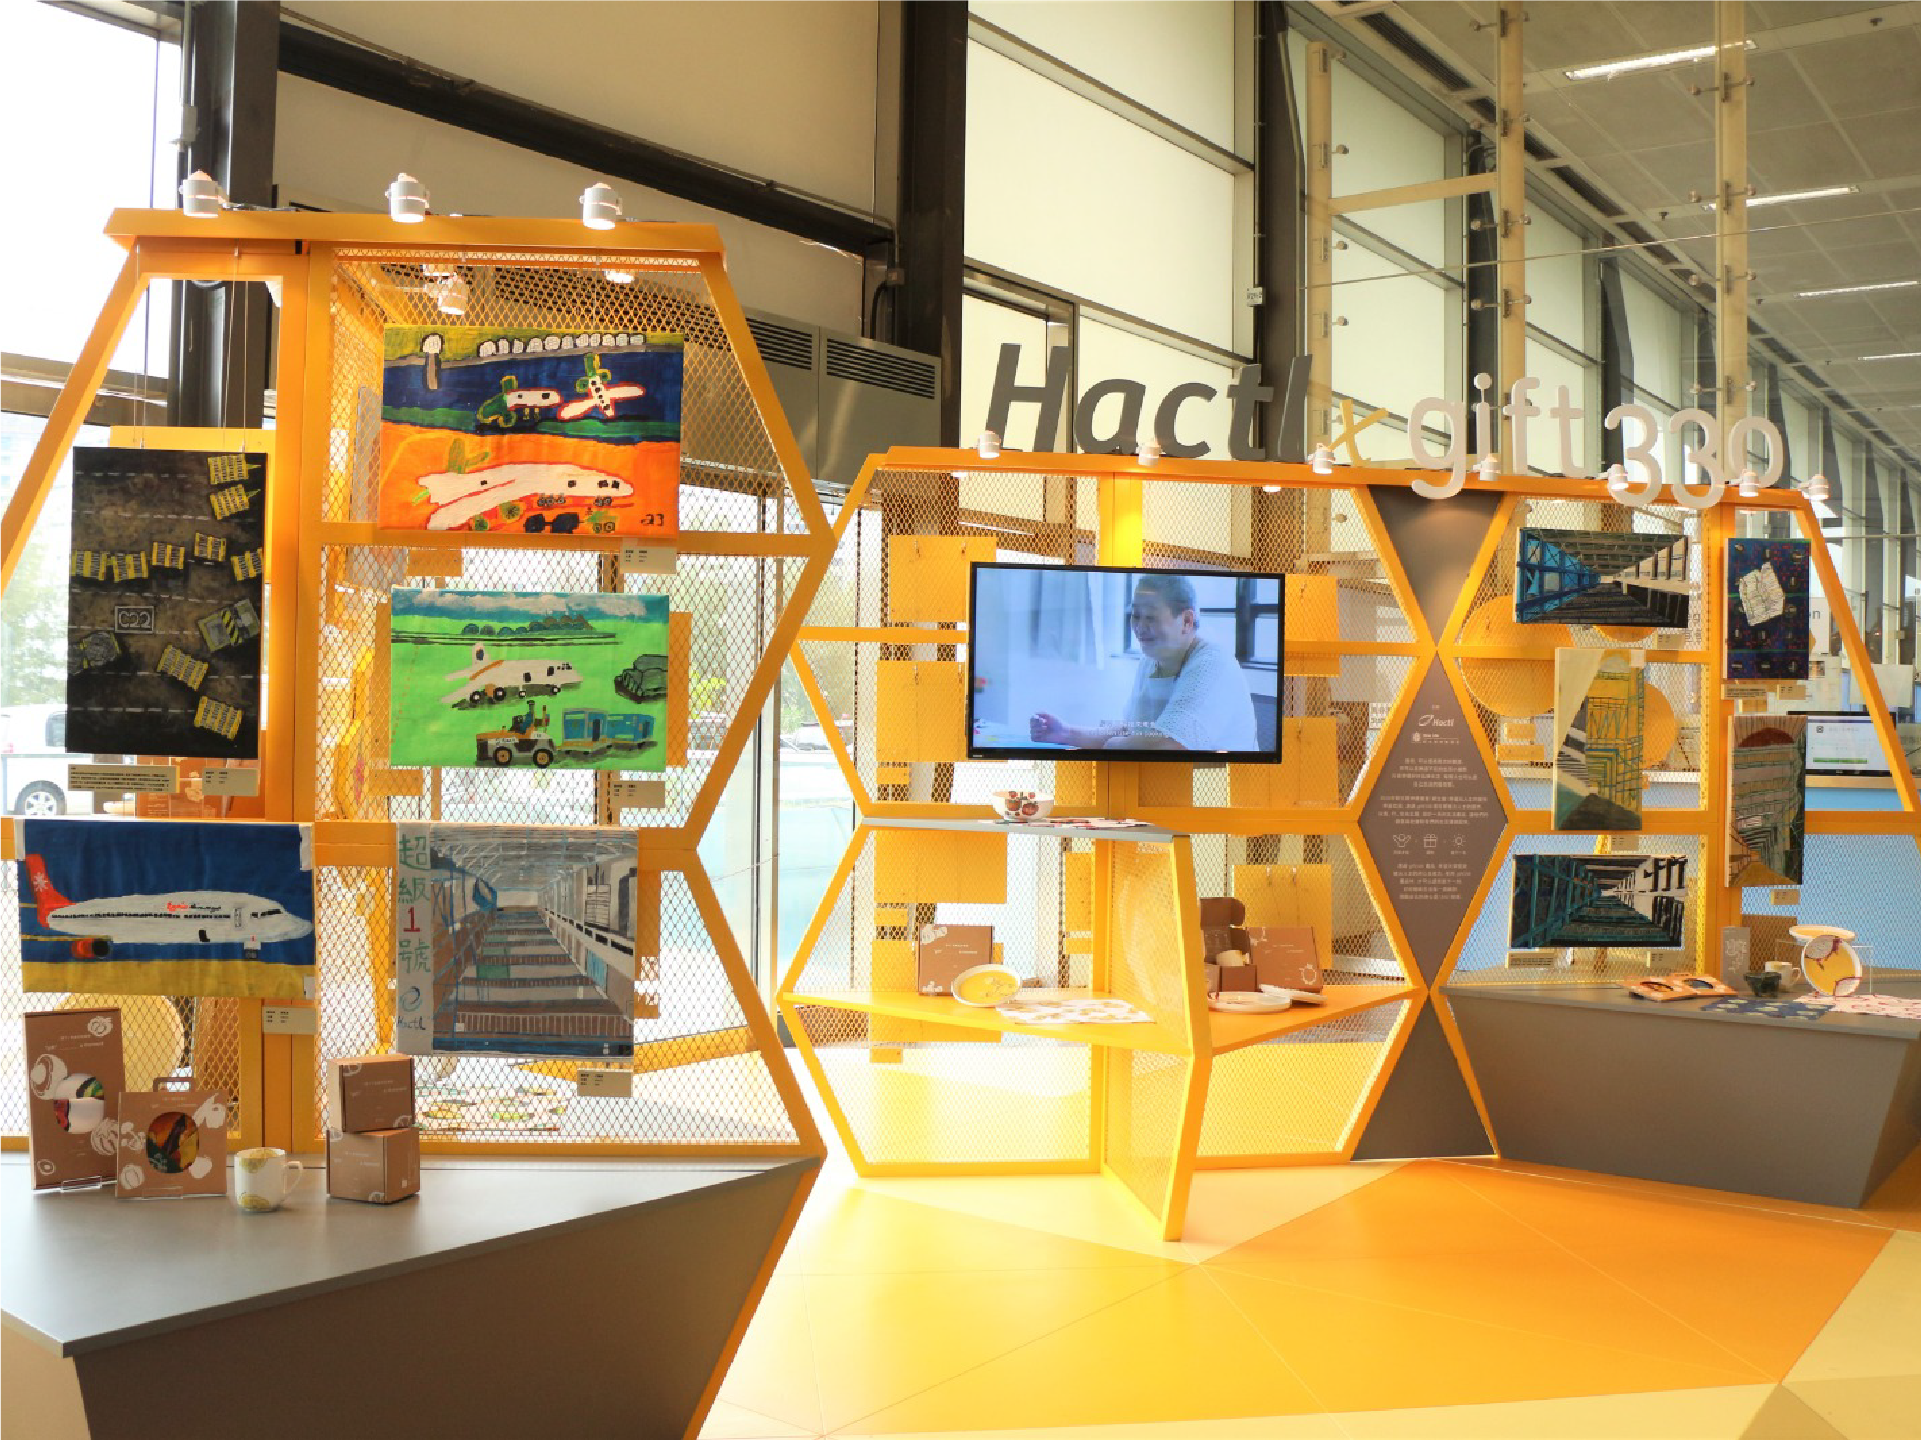 貨站與新生精神康復會合作，於超級一號貨站舉辦「Hactl x gift330」展覽